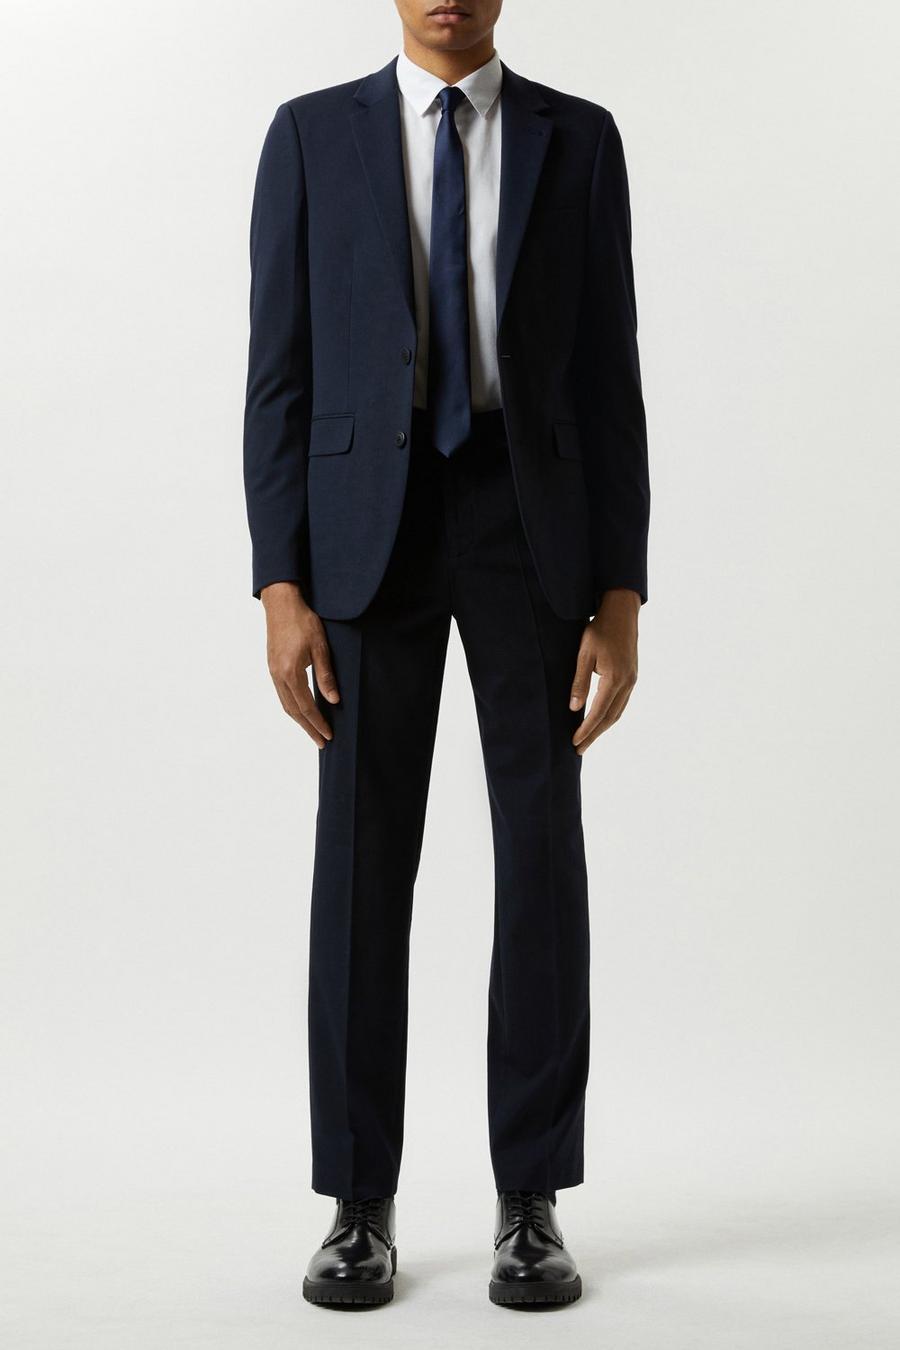 Men's Suits | Formal & Casual Suits | Burton UK